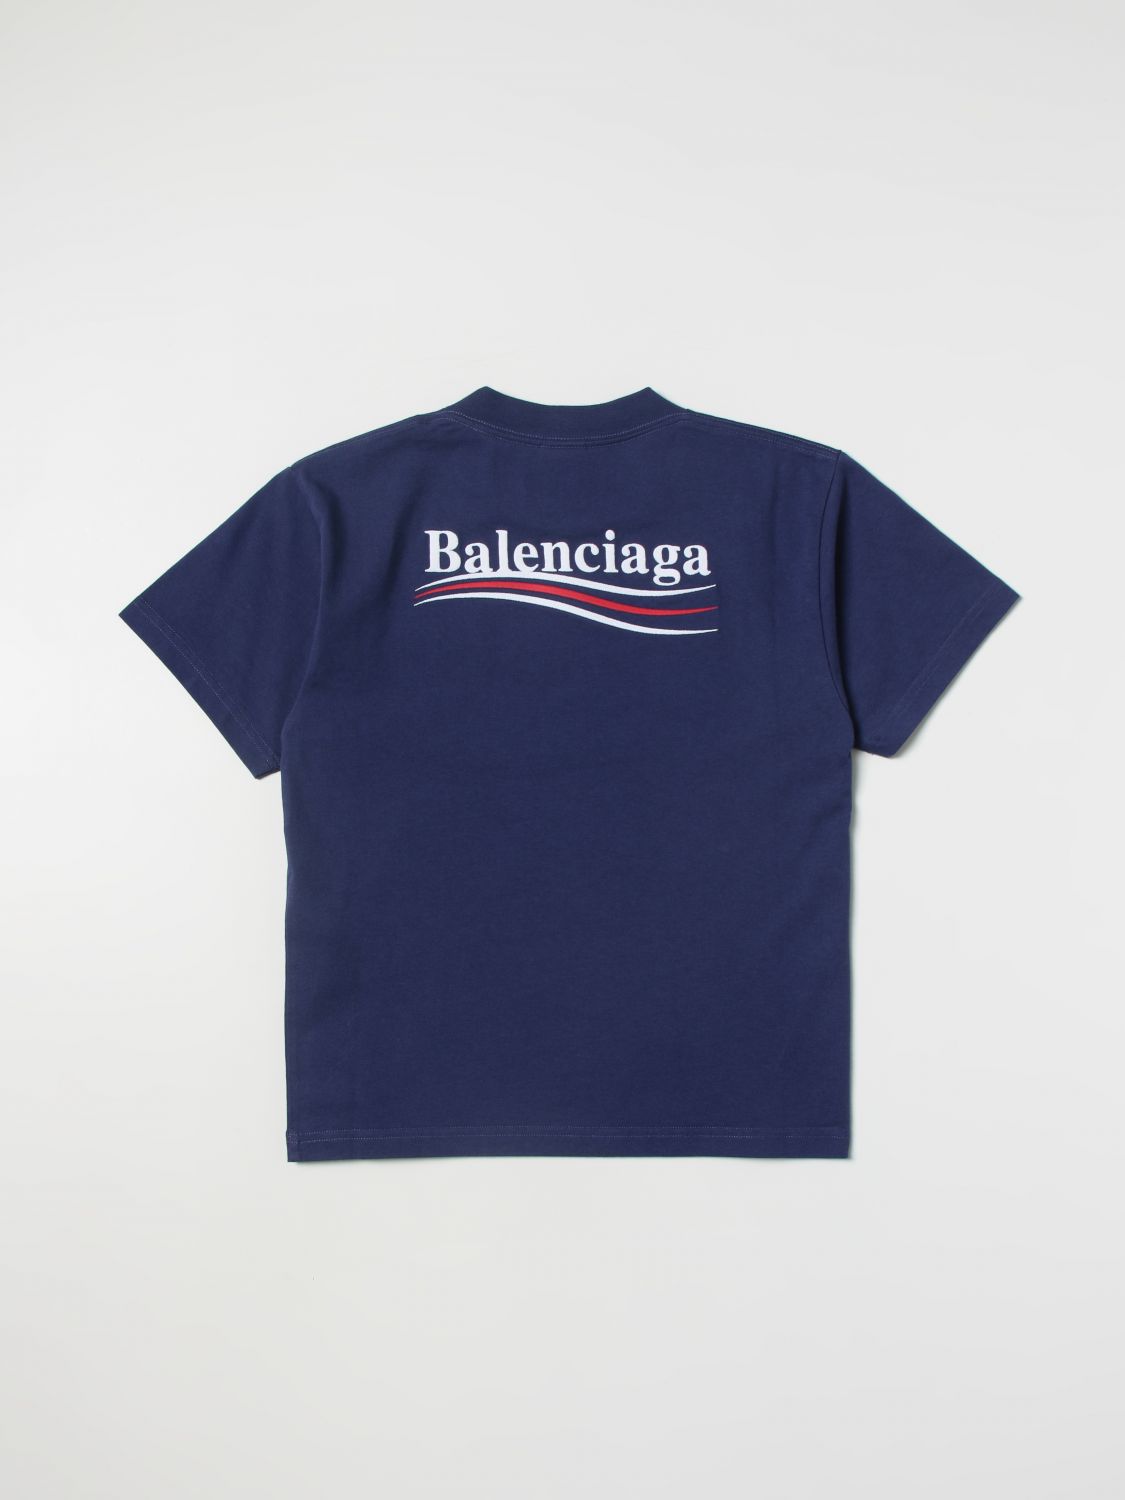 BALENCIAGA: Camiseta para niño, Azul | Camiseta Balenciaga 681864 TMVE7 en línea en GIGLIO.COM